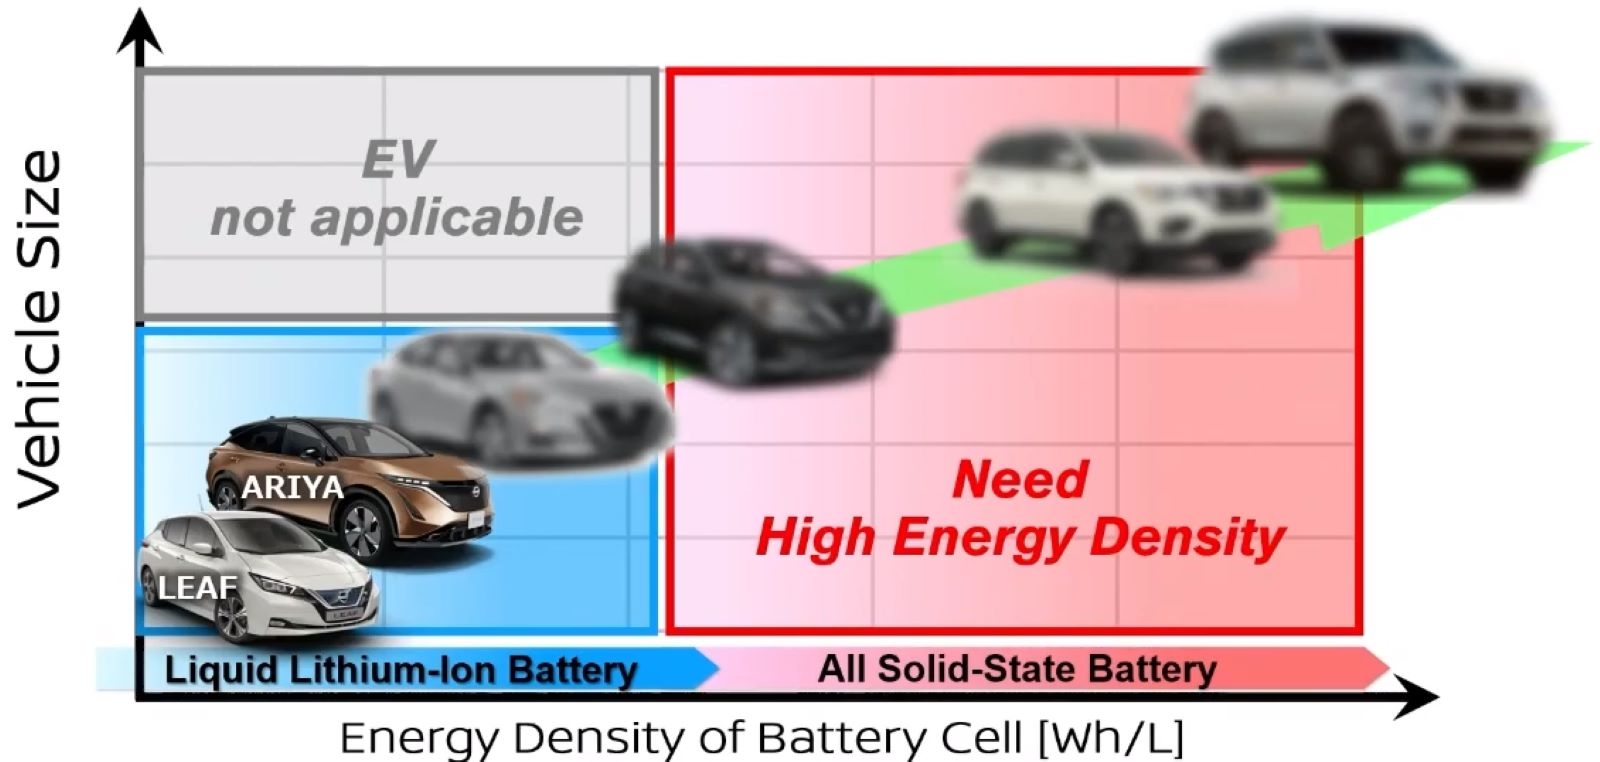 図2　日産は大型車までEV化を進める考え 車両サイズが大きくなるほど、搭載する電池のエネルギー密度を高める必要がある。オンライン発表の様子をキャプチャー。